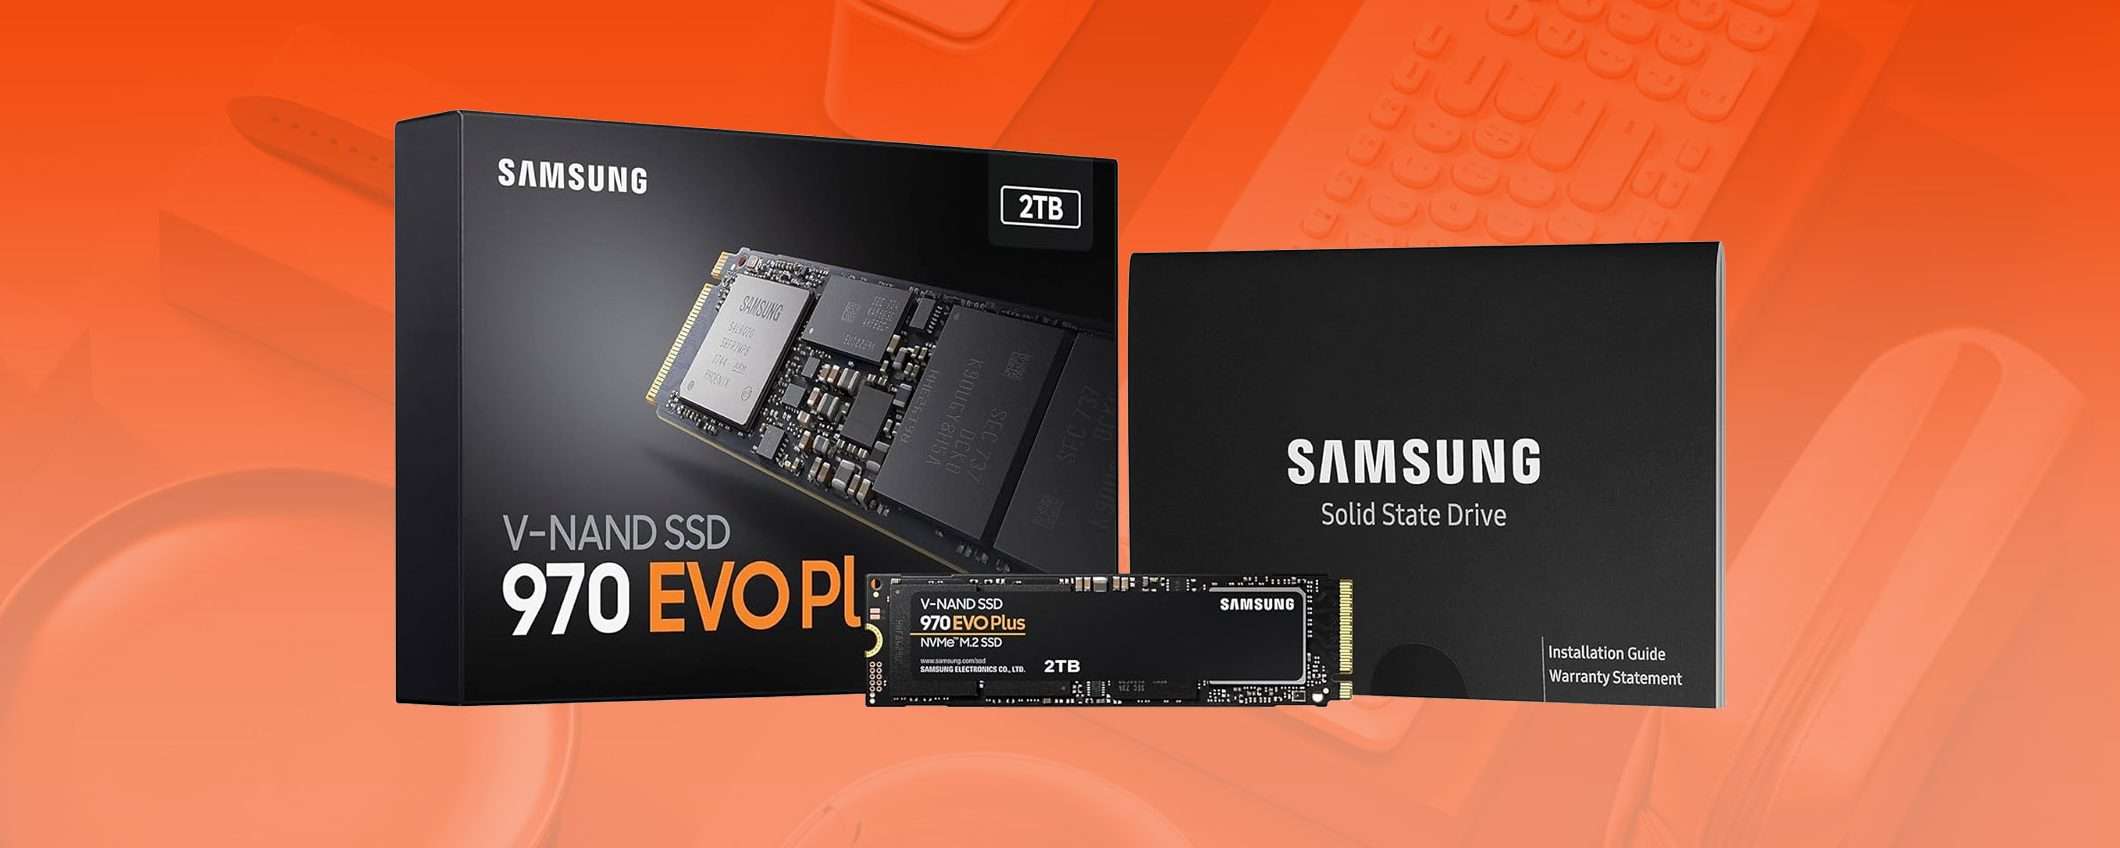 SSD Samsung da 2 TB protagonista tra le Offerte di Primavera